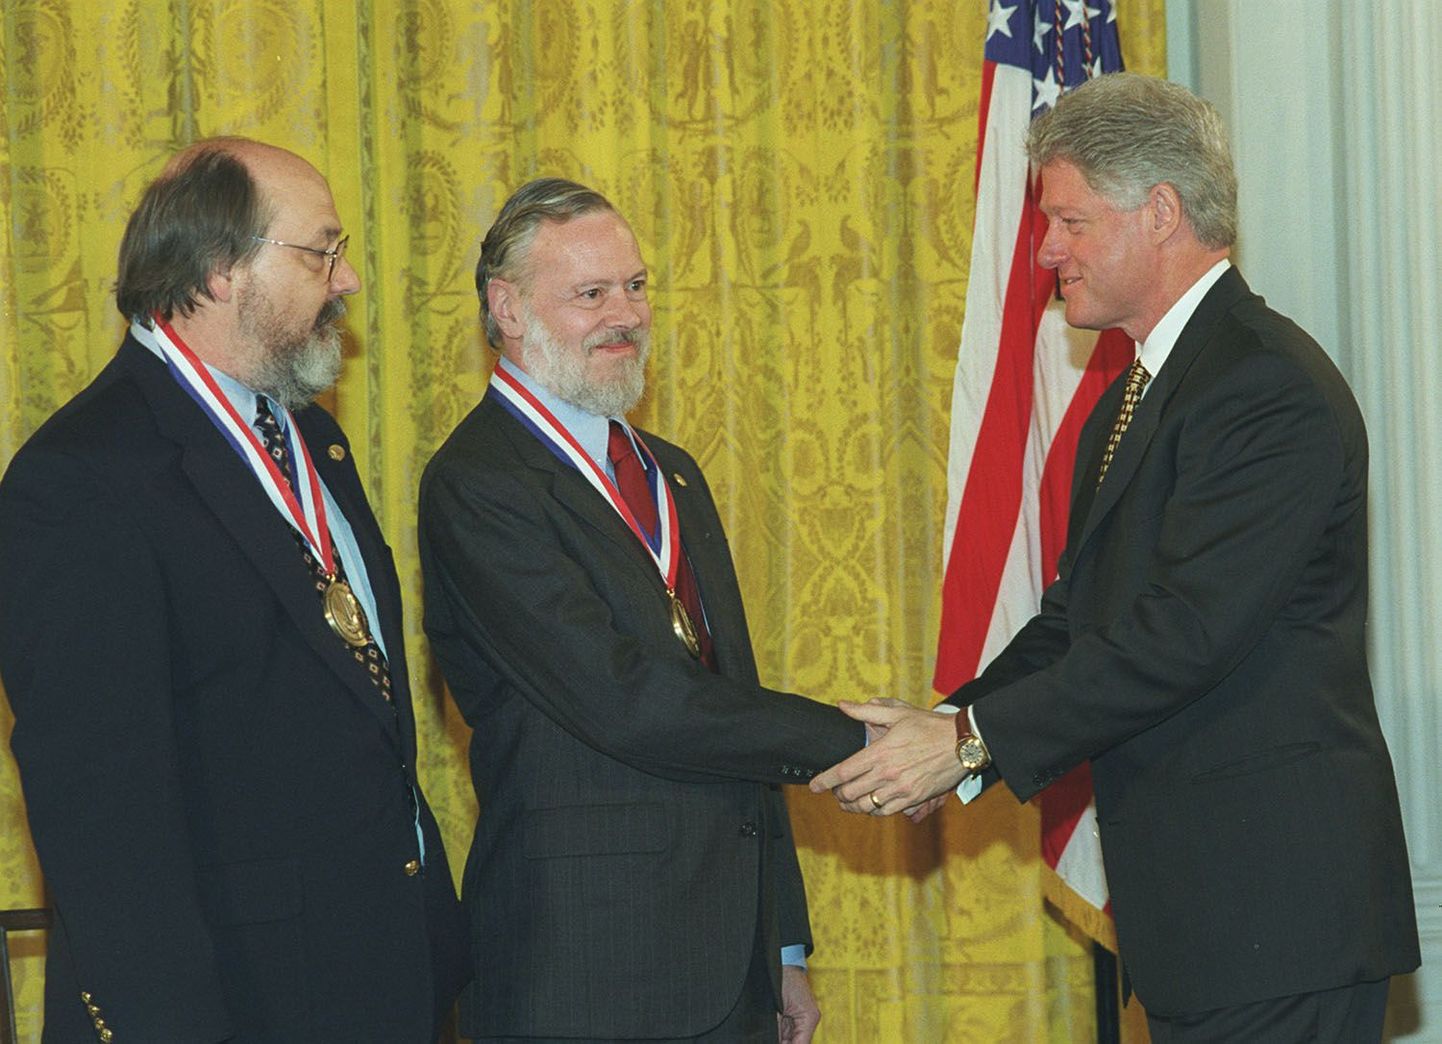 Деннис Ритчи (в центре) и Кен Томпсон (слева) получают Национальную медаль США за достижения в области технологий и инноваций 1998 года из рук президента Билла Клинтона